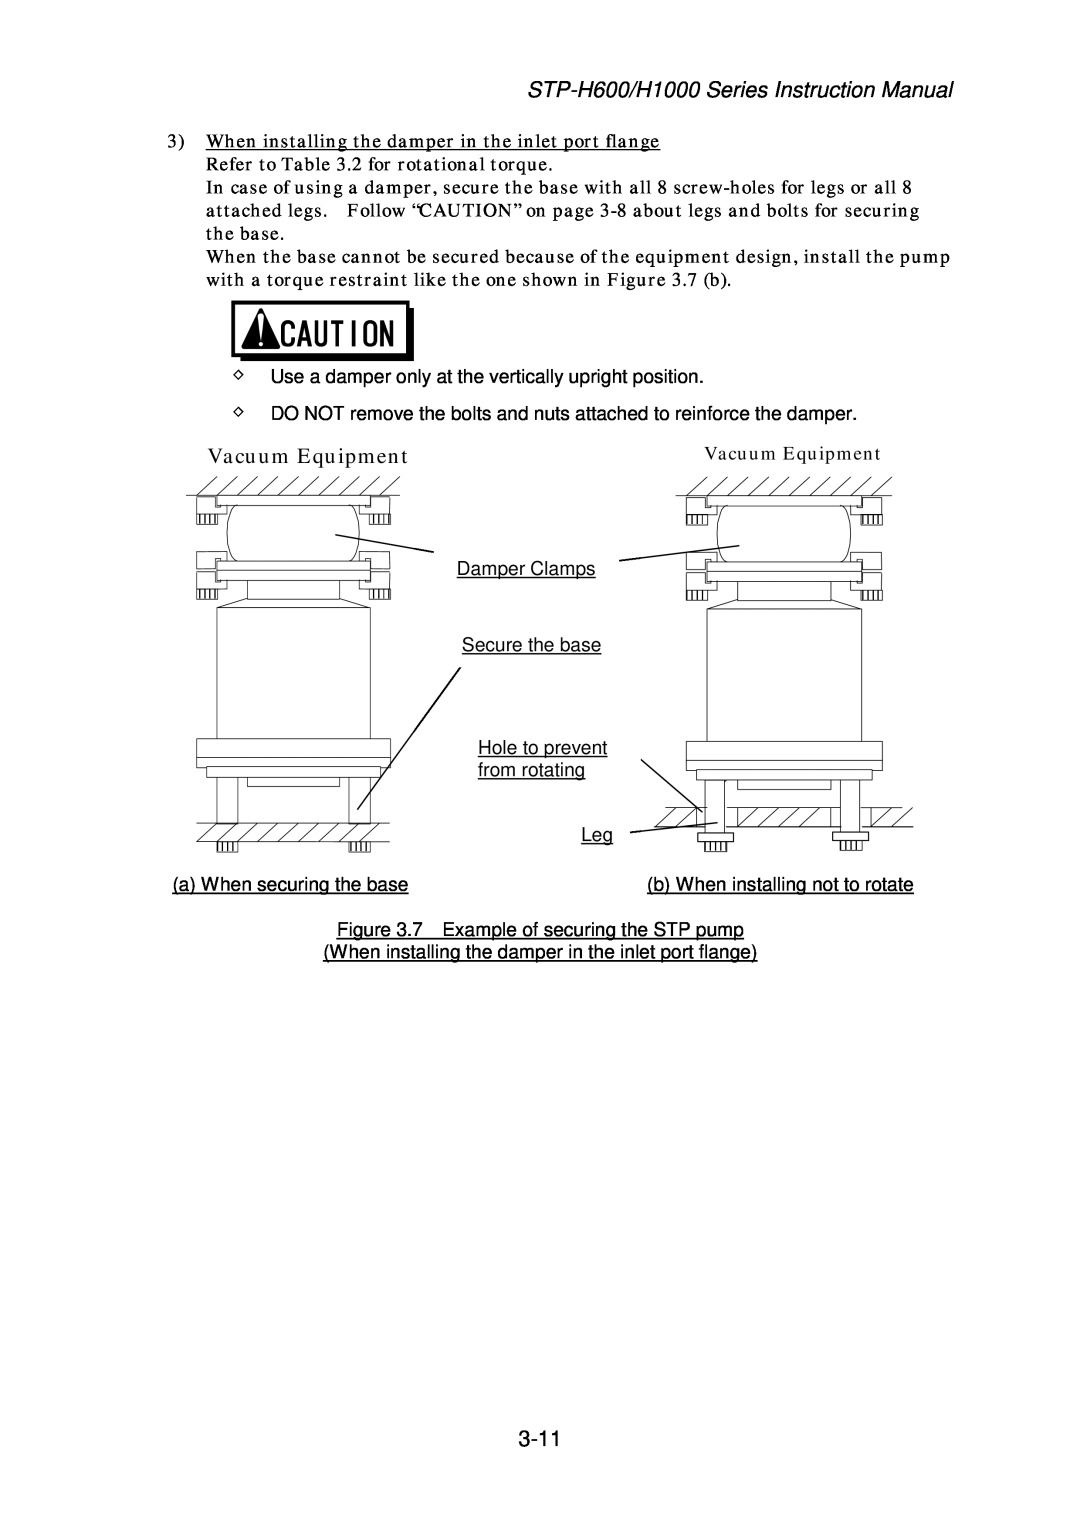 Seiko Instruments MT-17E-003-D instruction manual Vacuum Equipment 